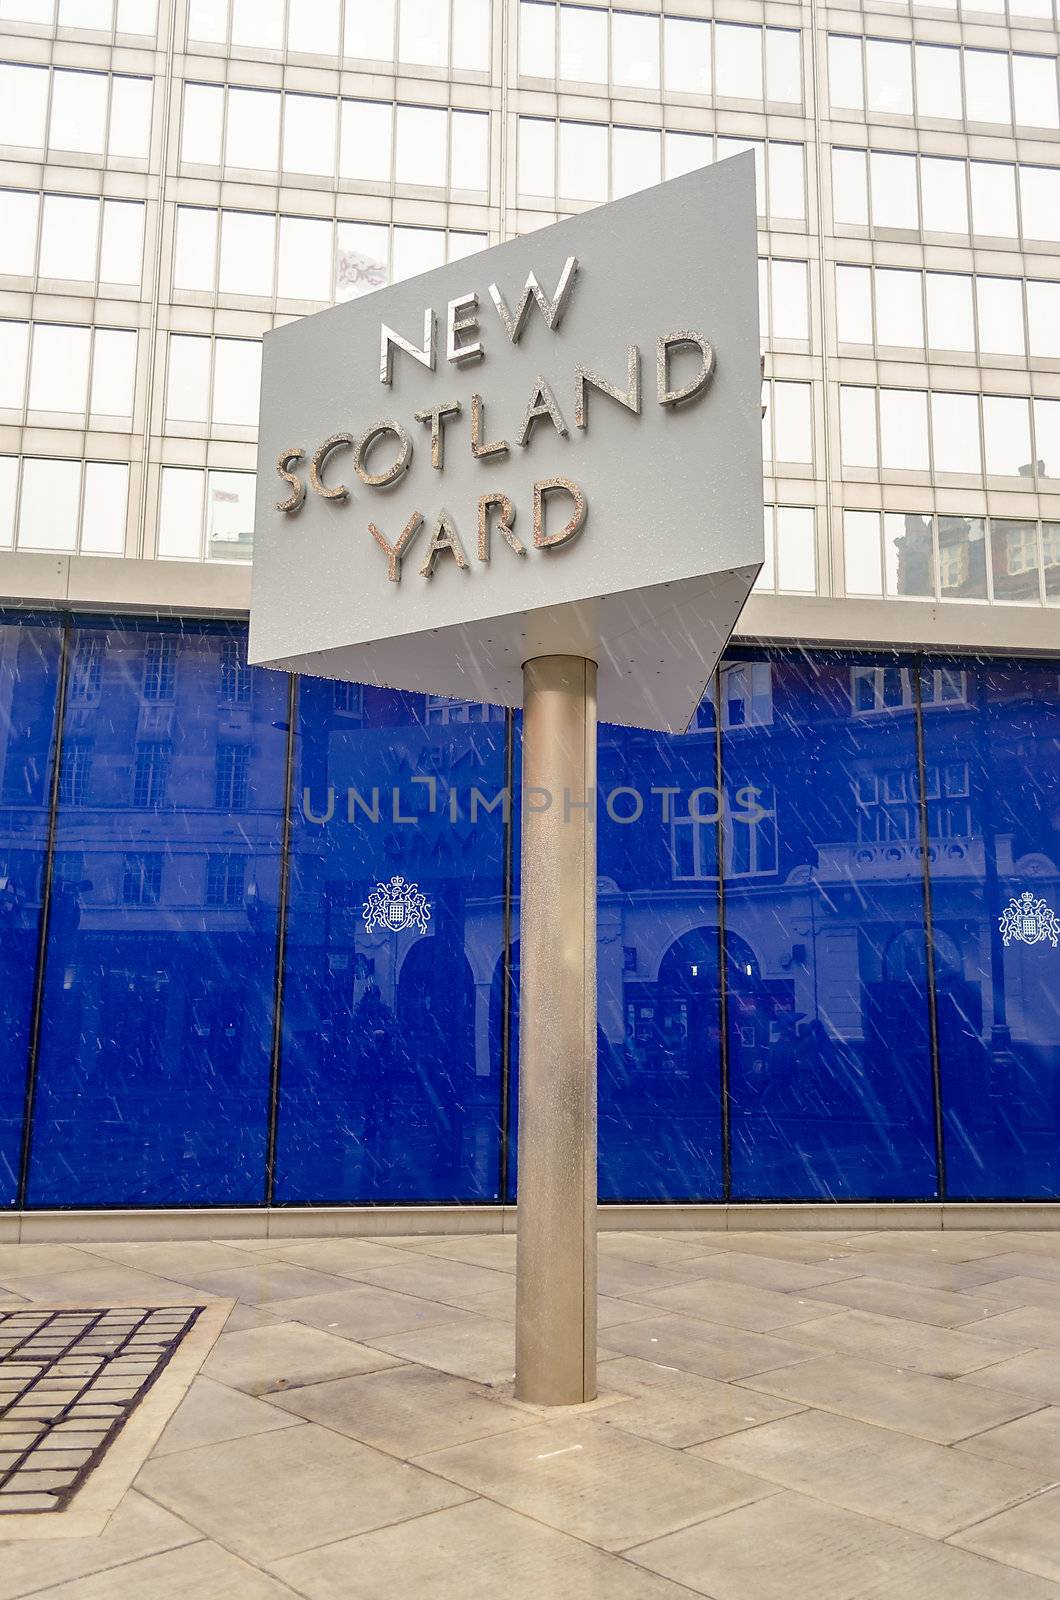 New Scotland Yard Building, London, UK by marcorubino